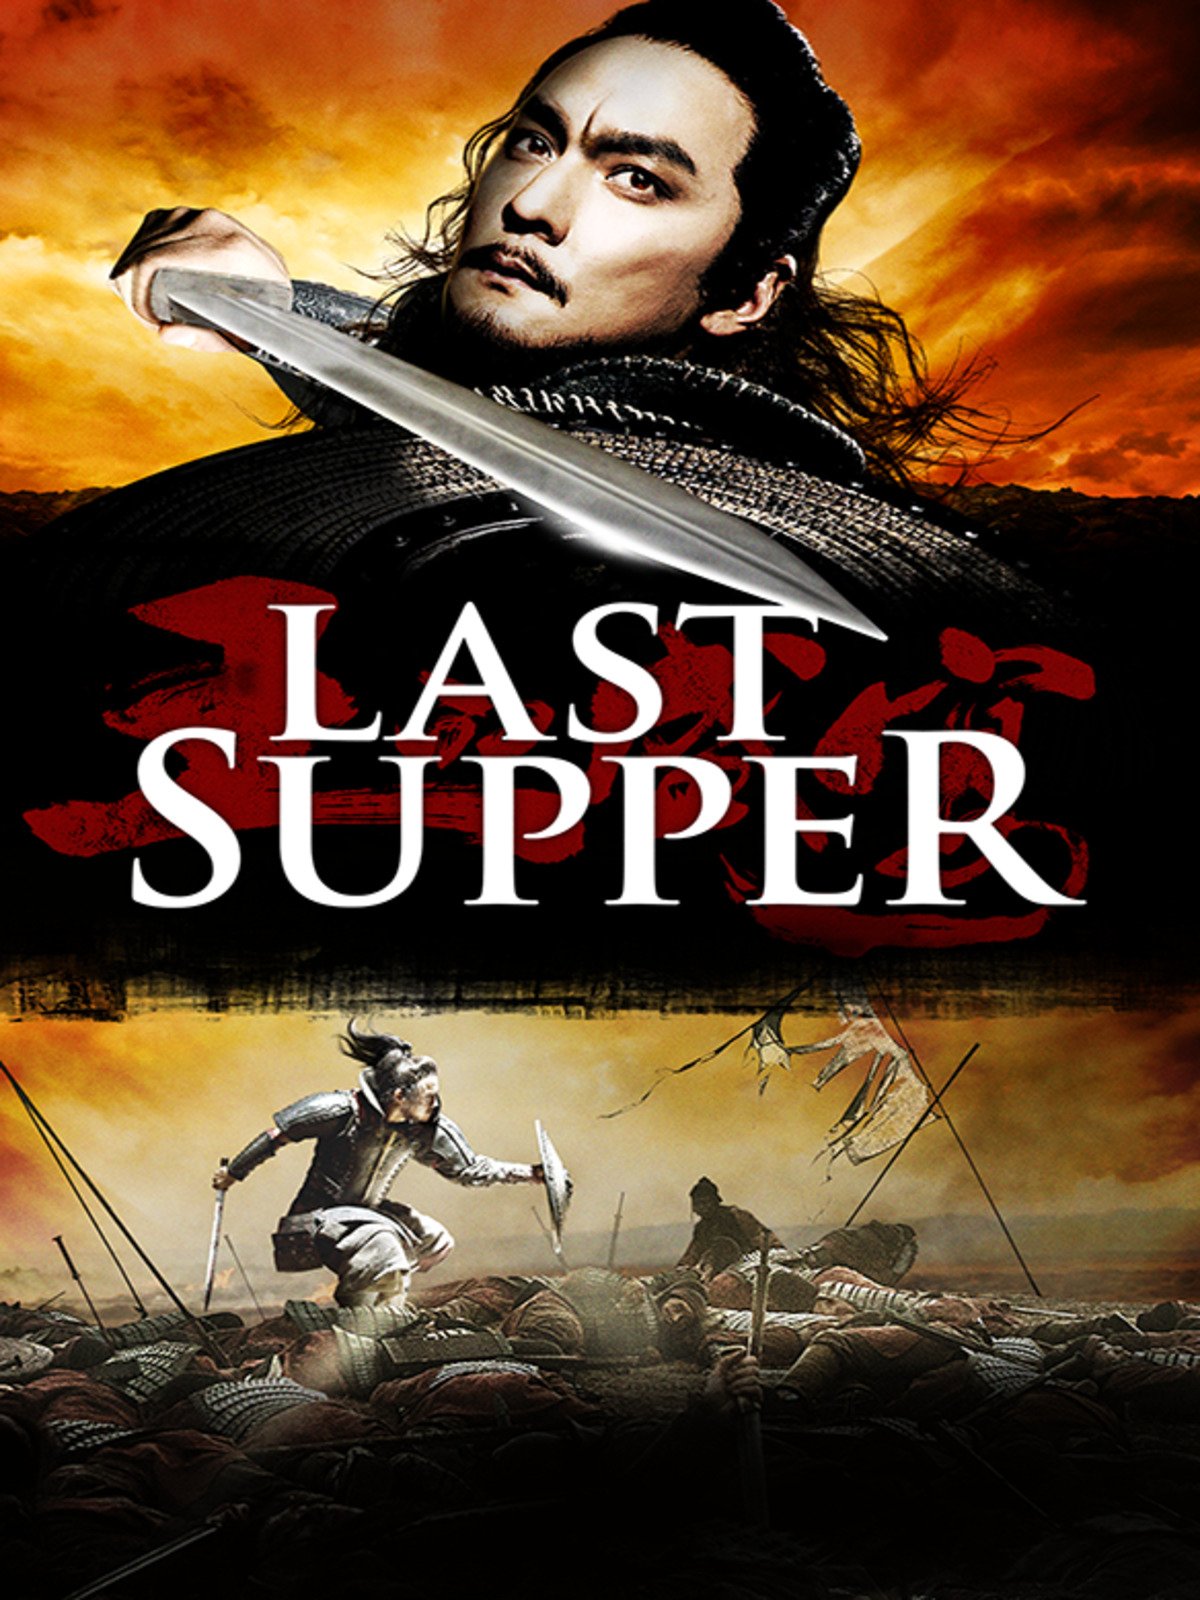 ดูหนังออนไลน์ฟรี ดูหนัง The Last Supper 2013 ฌ้อป๋าอ๋อง มหากาพย์ลำน้ำเลือด movie678